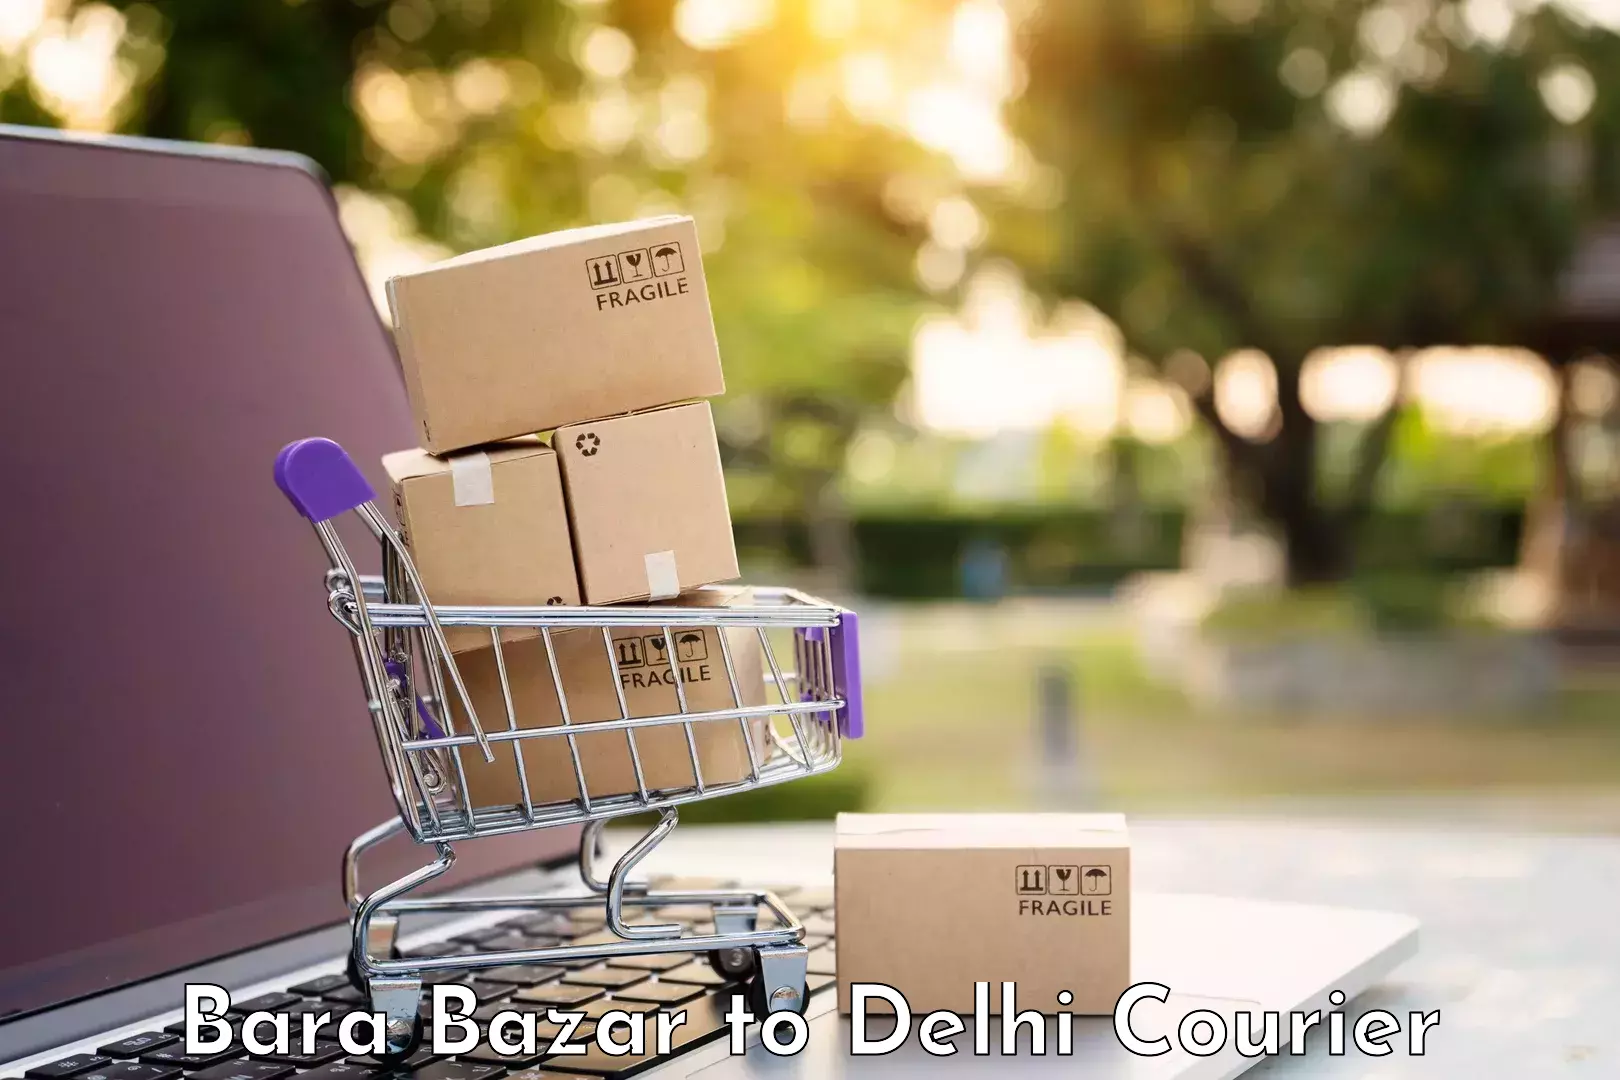 Baggage transport cost Bara Bazar to IIT Delhi